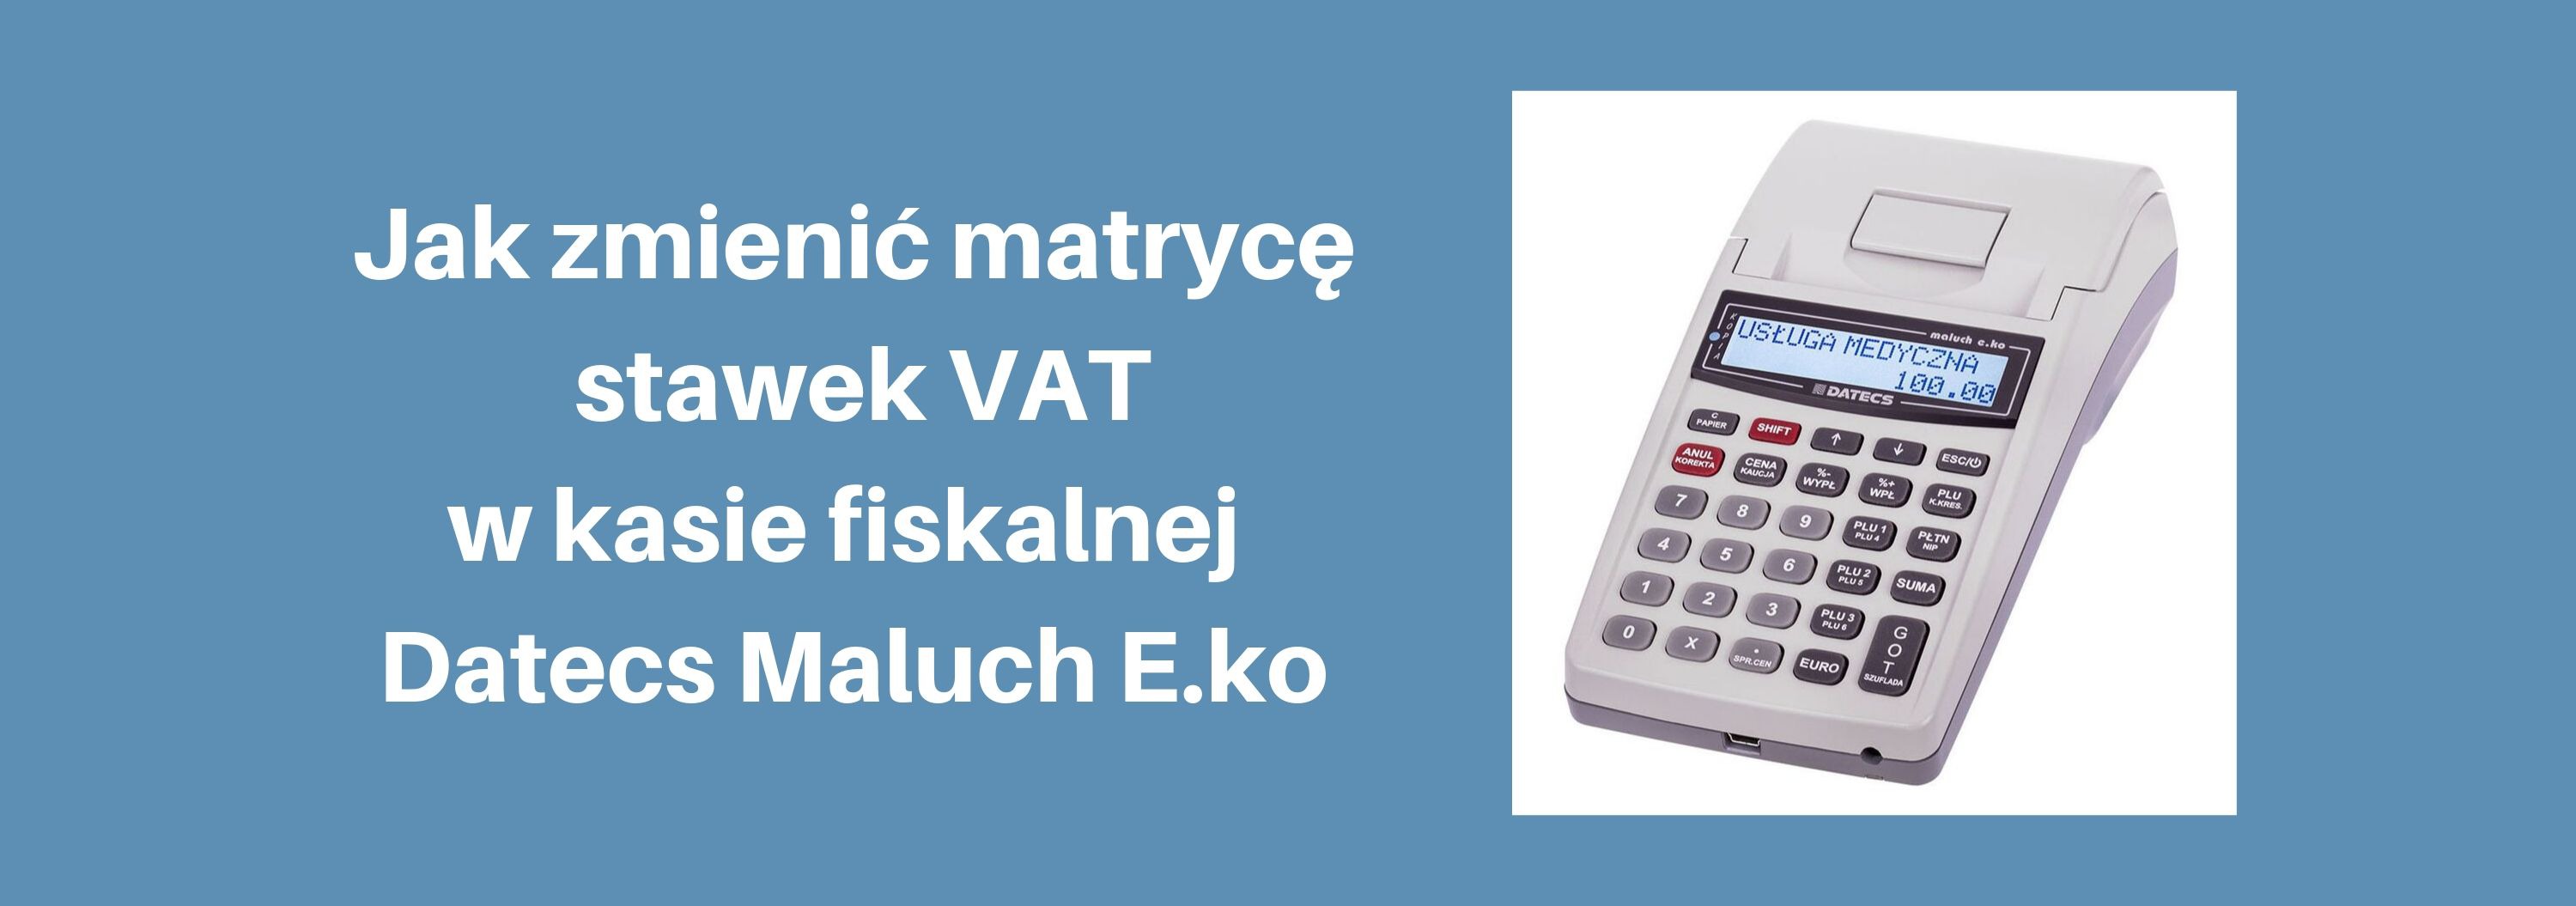 Zmiana "matrycy stawek VAT" w kasie fiskalnej Datecs Maluch E.ko